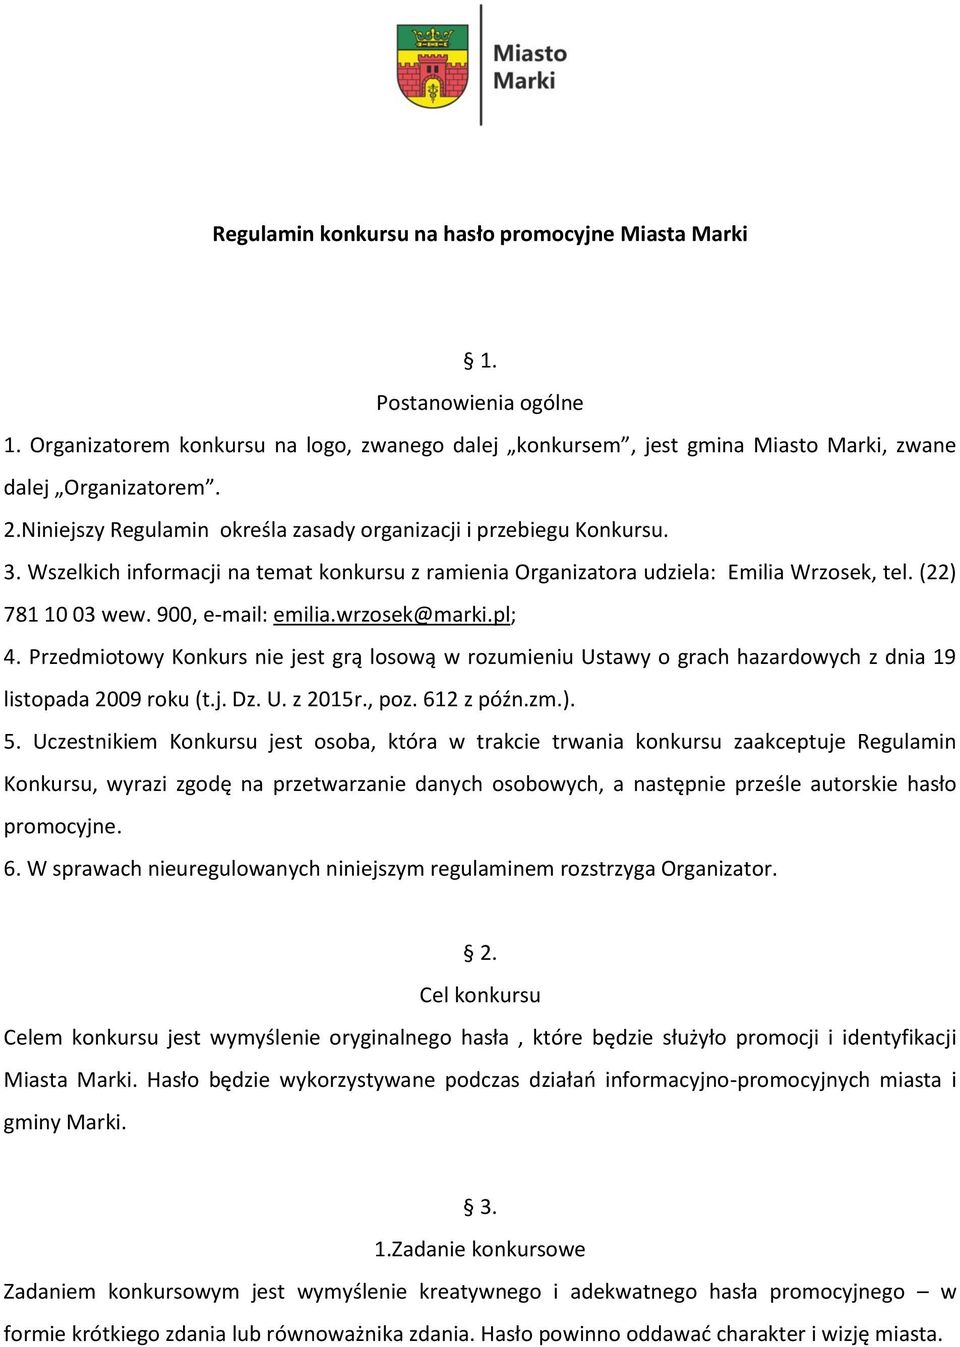 900, e-mail: emilia.wrzosek@marki.pl; 4. Przedmiotowy Konkurs nie jest grą losową w rozumieniu Ustawy o grach hazardowych z dnia 19 listopada 2009 roku (t.j. Dz. U. z 2015r., poz. 612 z późn.zm.). 5.